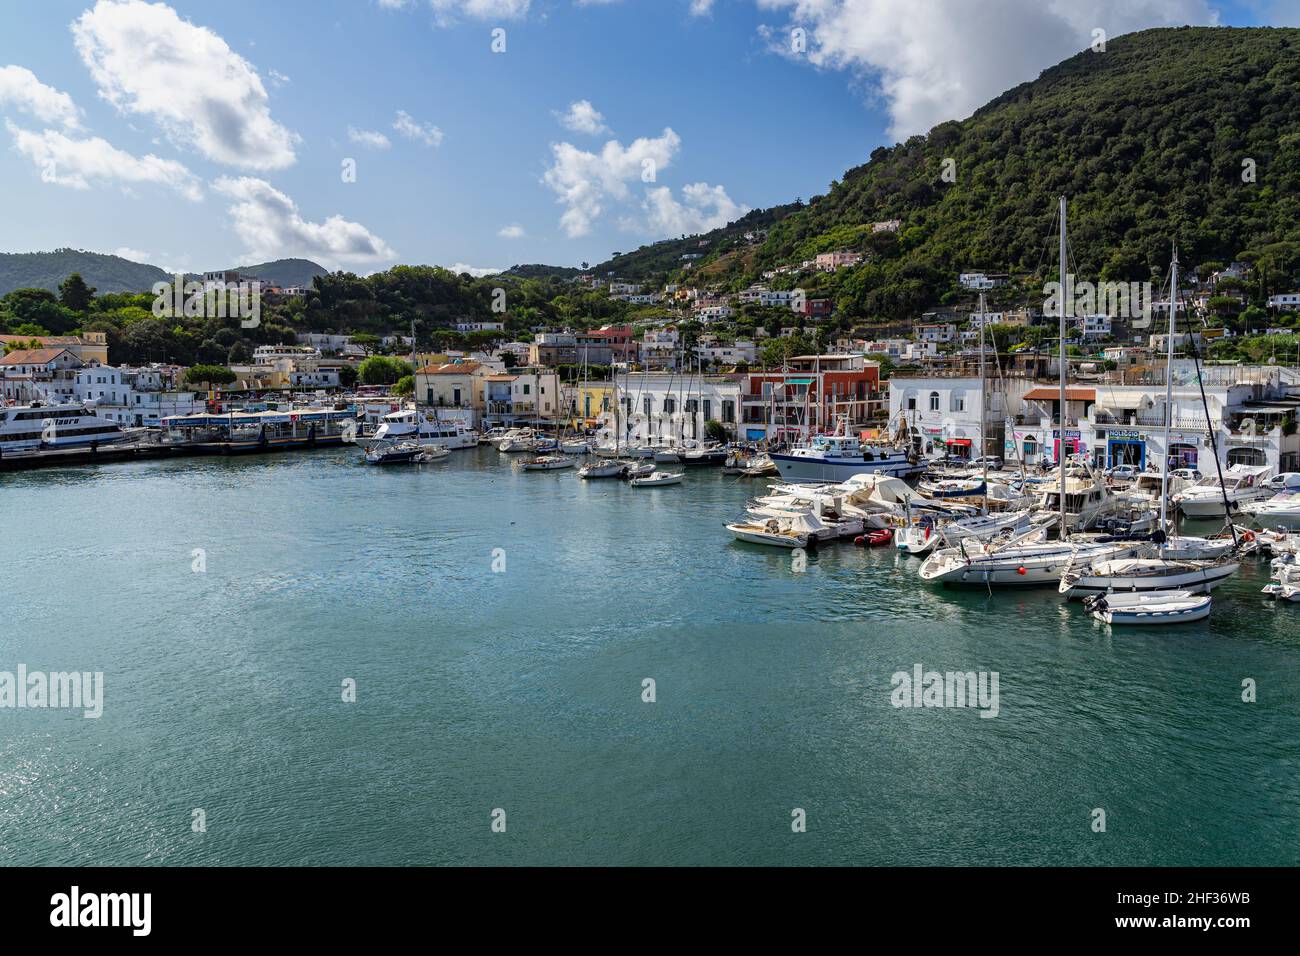 Bateaux de pêche et yachts amarrés à Ischia Porto dans une belle journée ensoleillée, région Campanie, Italie Banque D'Images